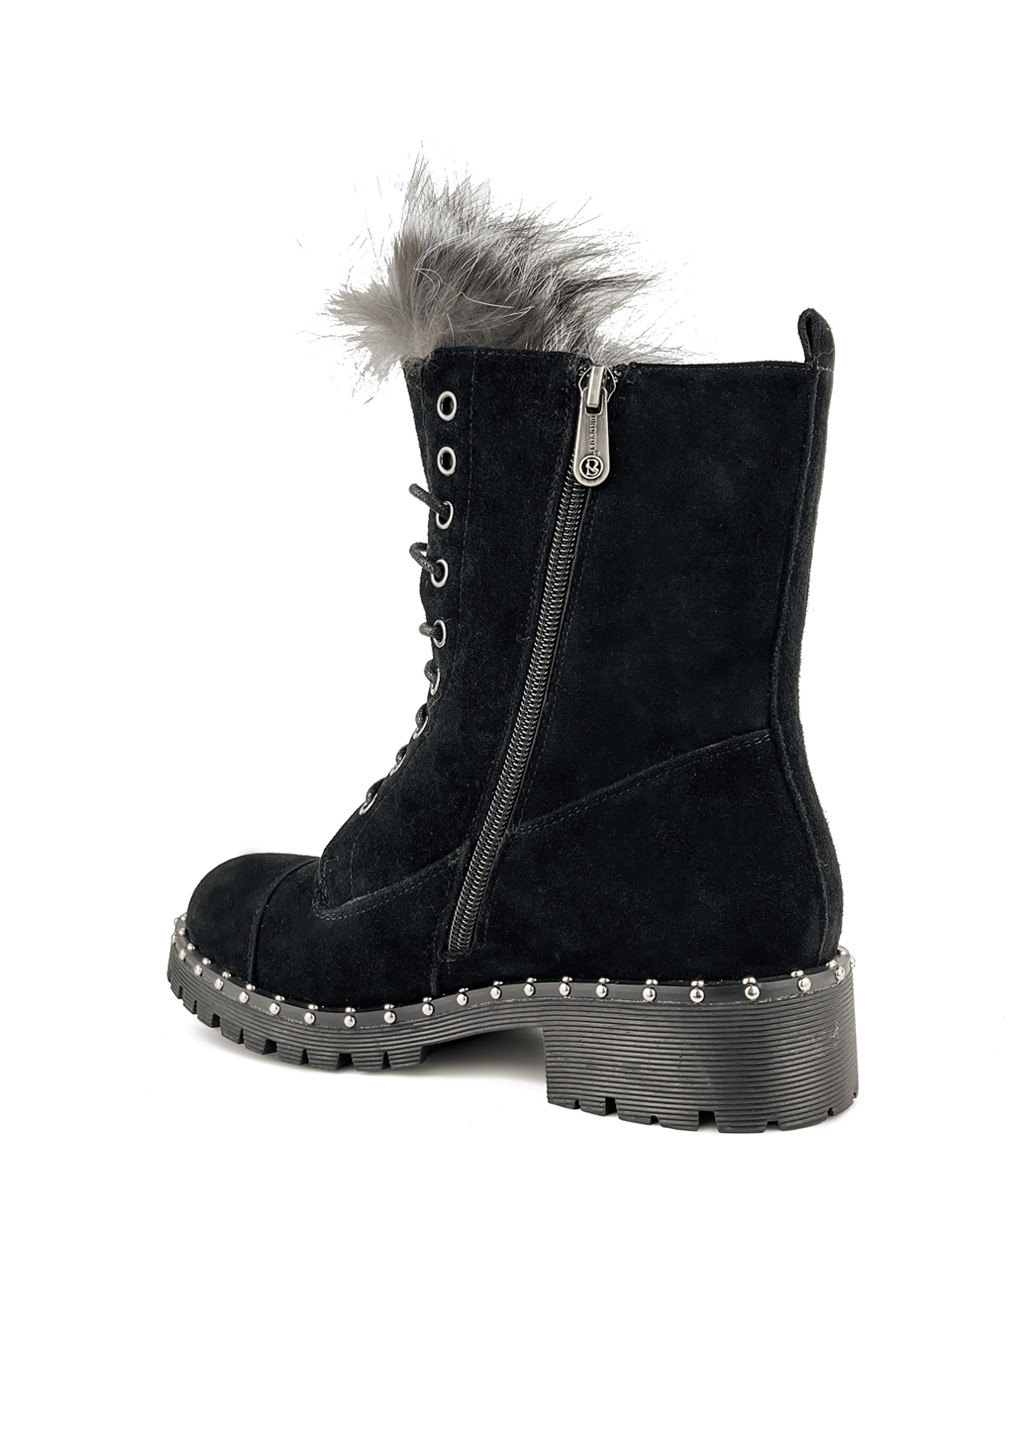 Зимние высокие зимние ботинки замшевые черные с мехом Brocoli из натуральной замши